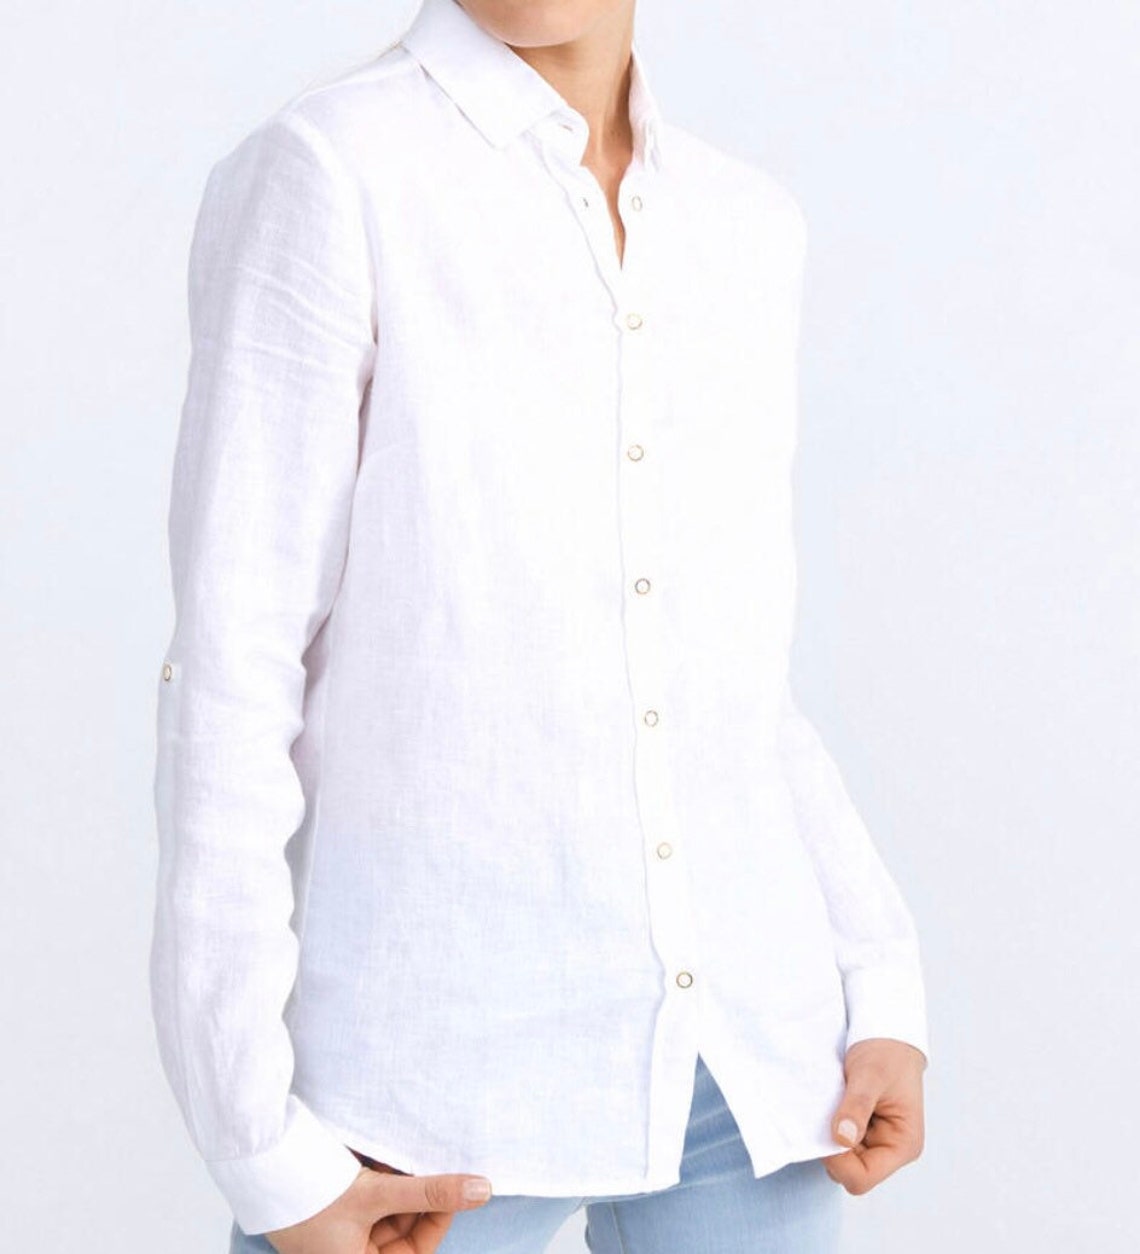 Womens Classic linen button up shirt white linen shirt | Etsy